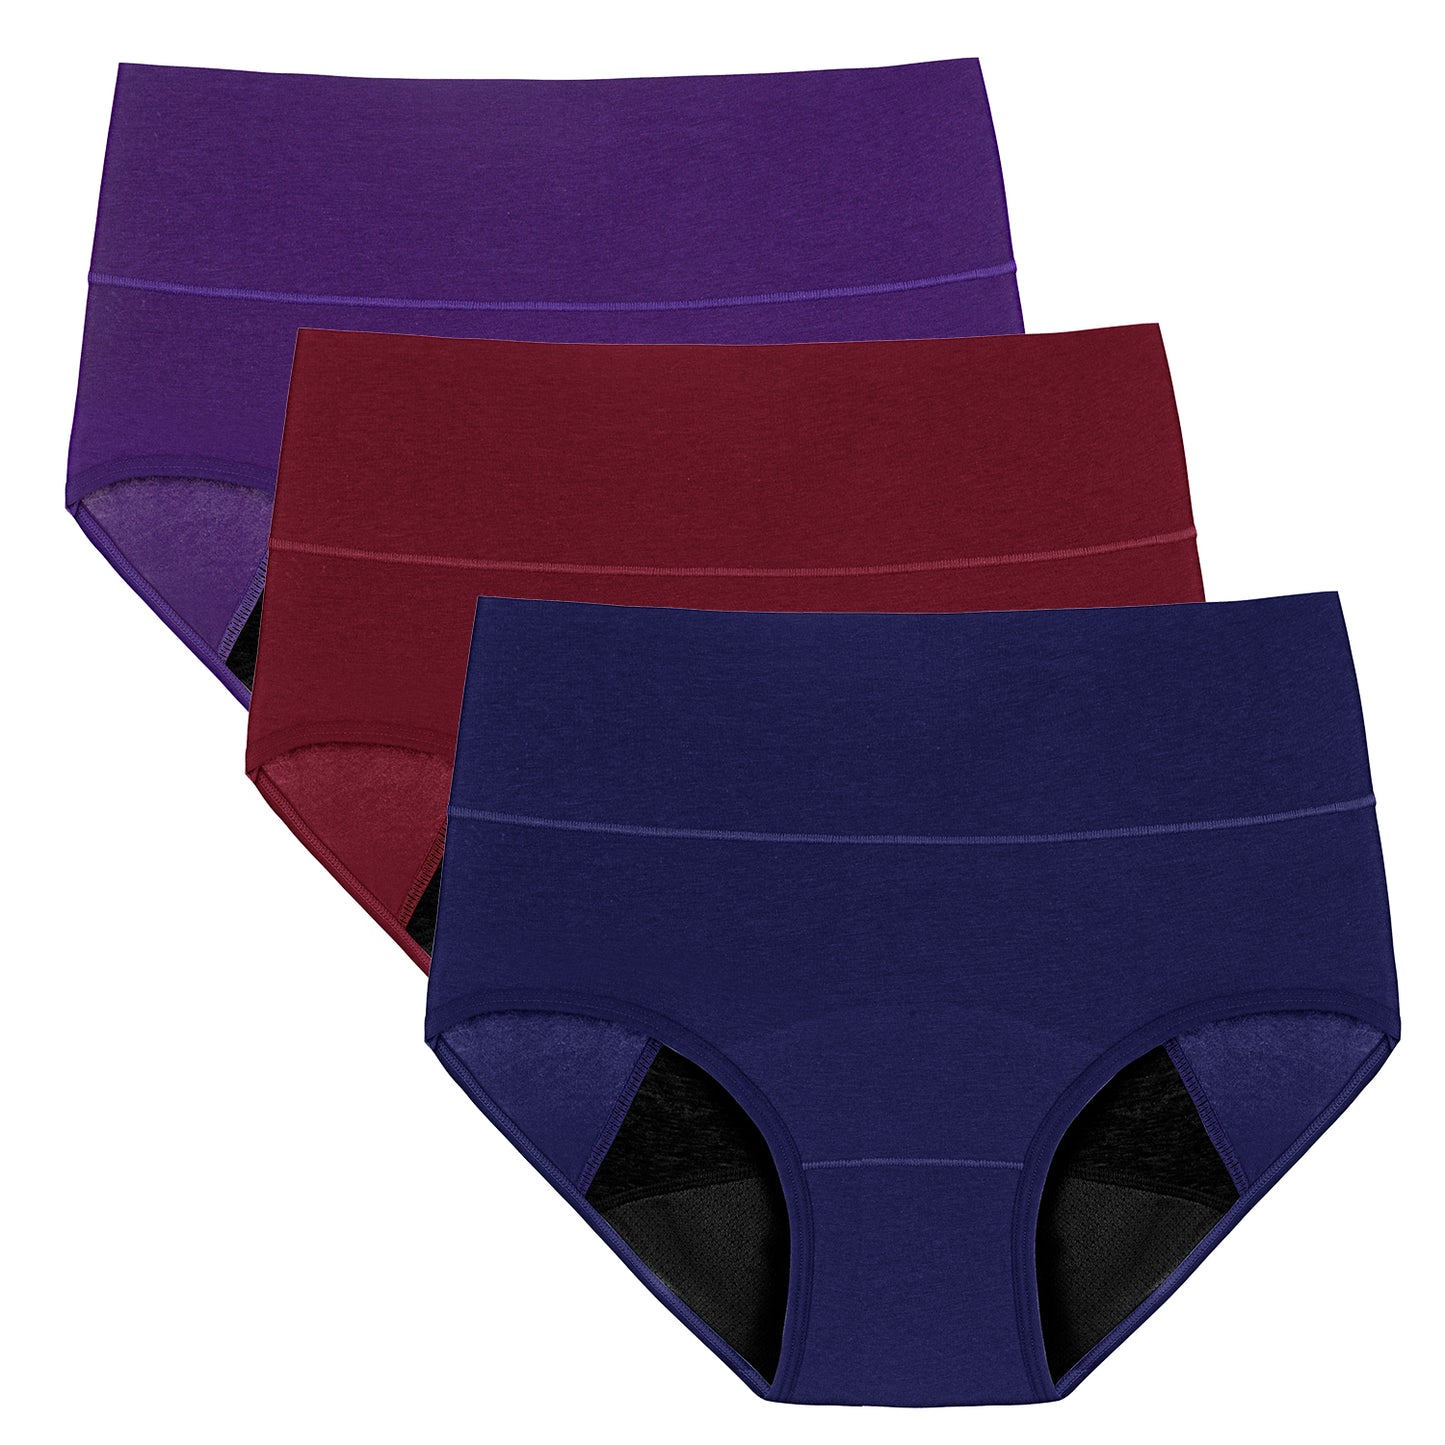 Molasus Womens Underwear Mid Waist Cotton Briefs Soft Stretchy